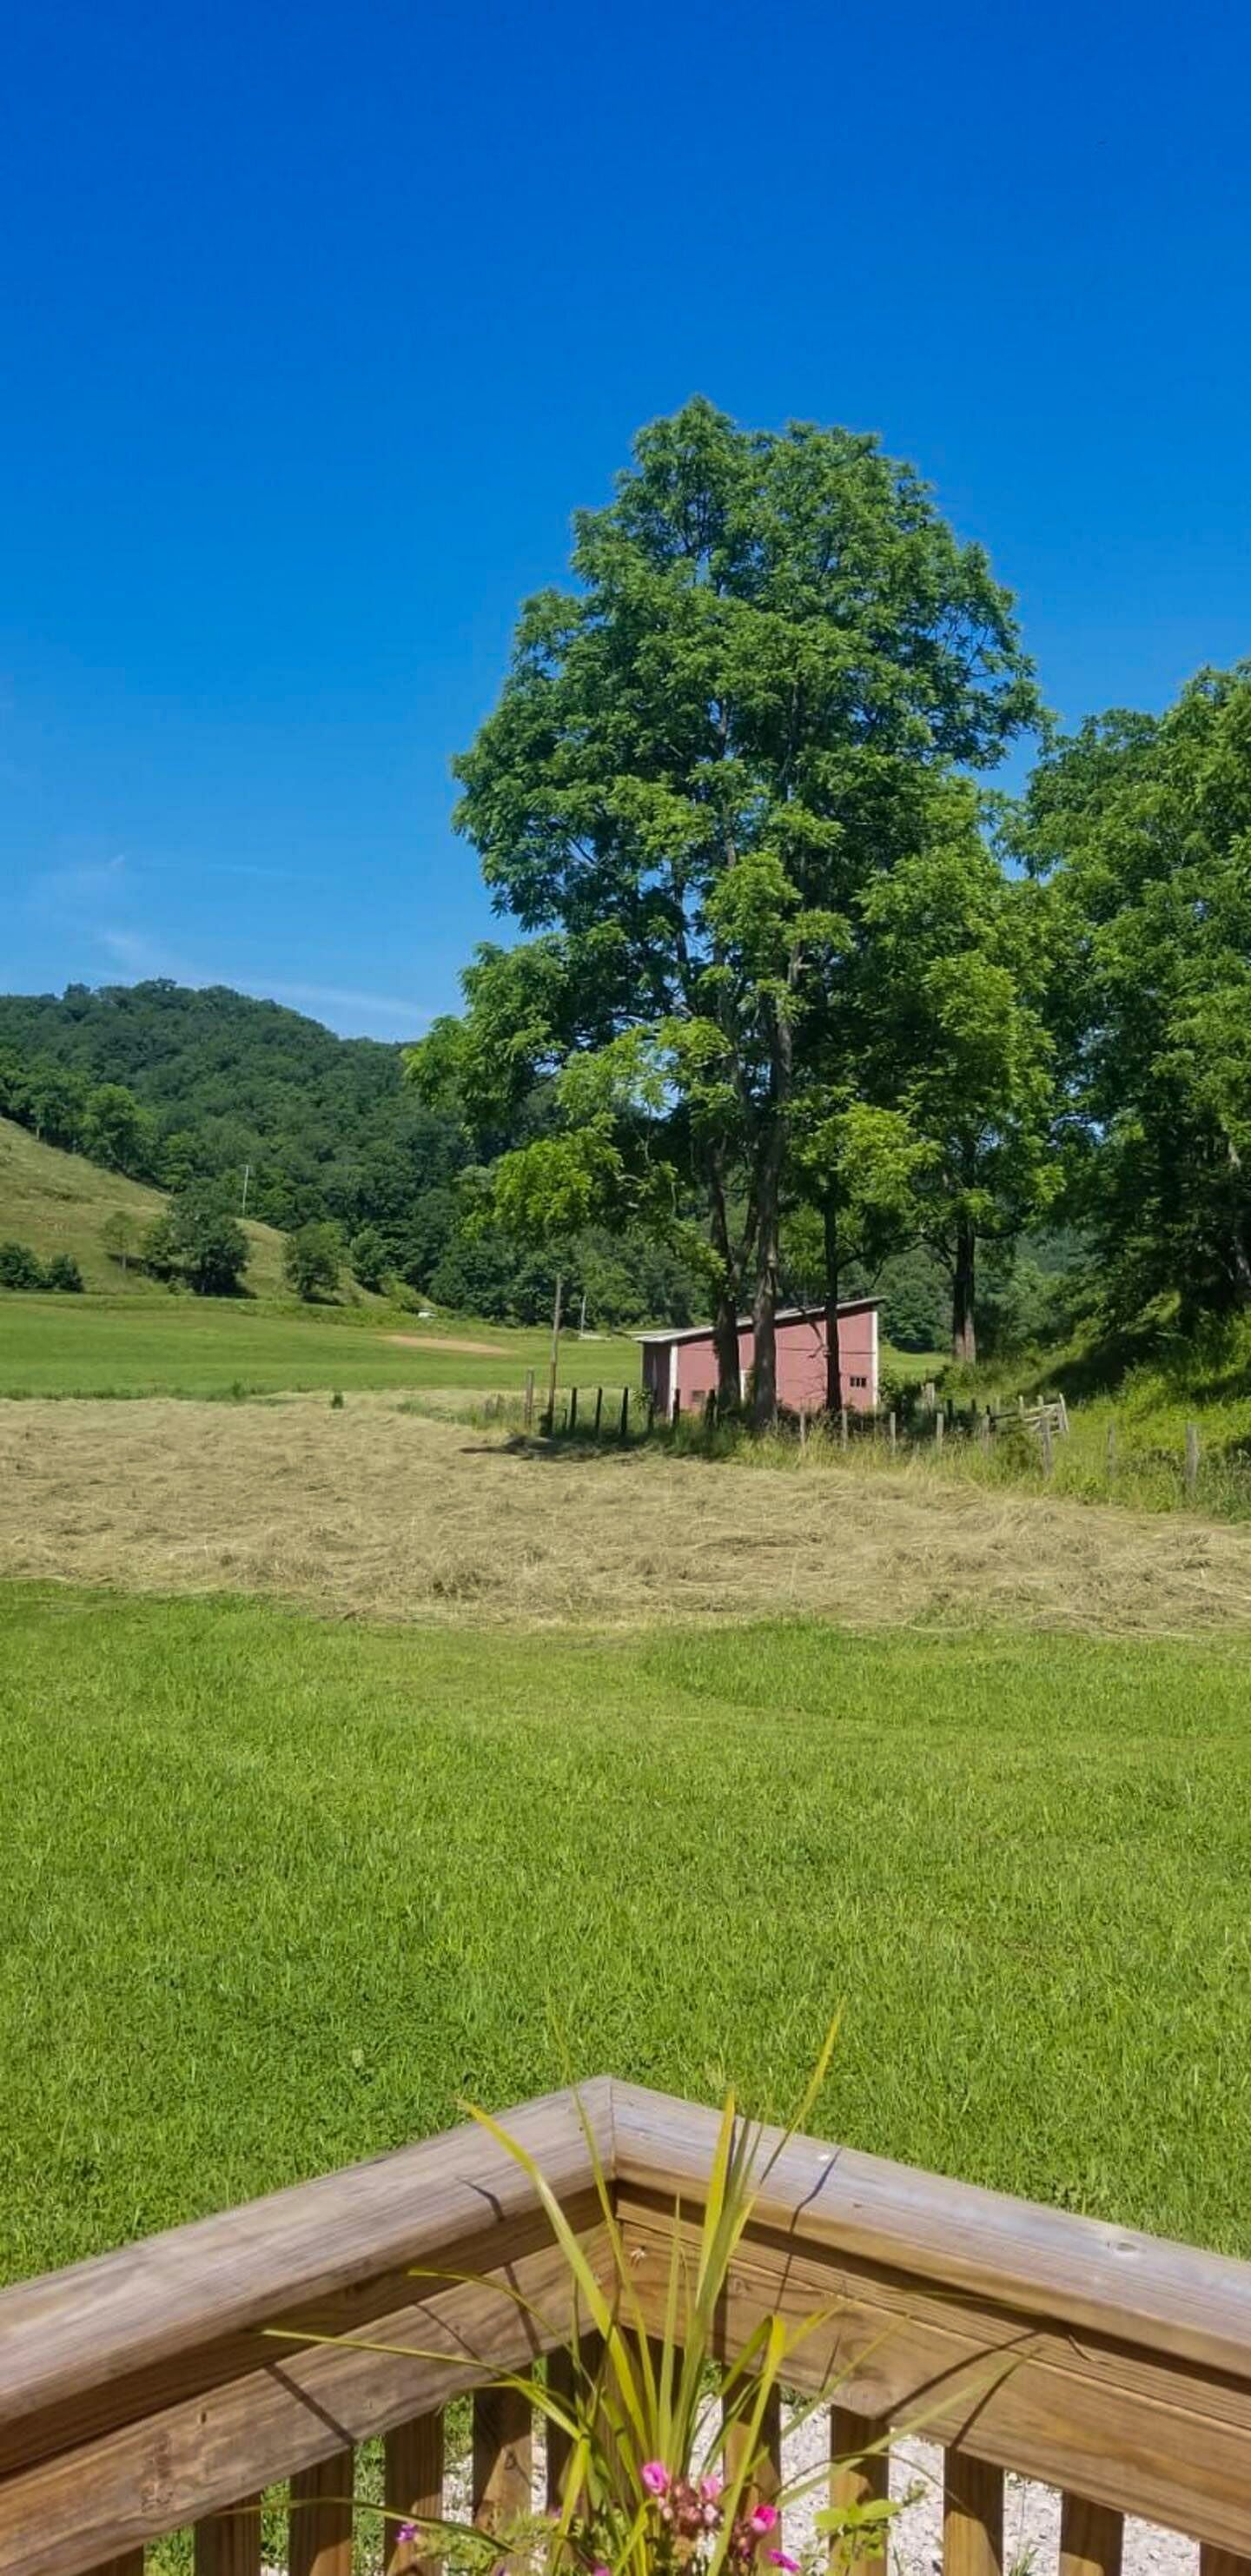 JWguest Trailer/Camper/RV at LeRoy, West Virginia | The Farm - Cool vintage travel trailer | Jwbnb no brobnb 23